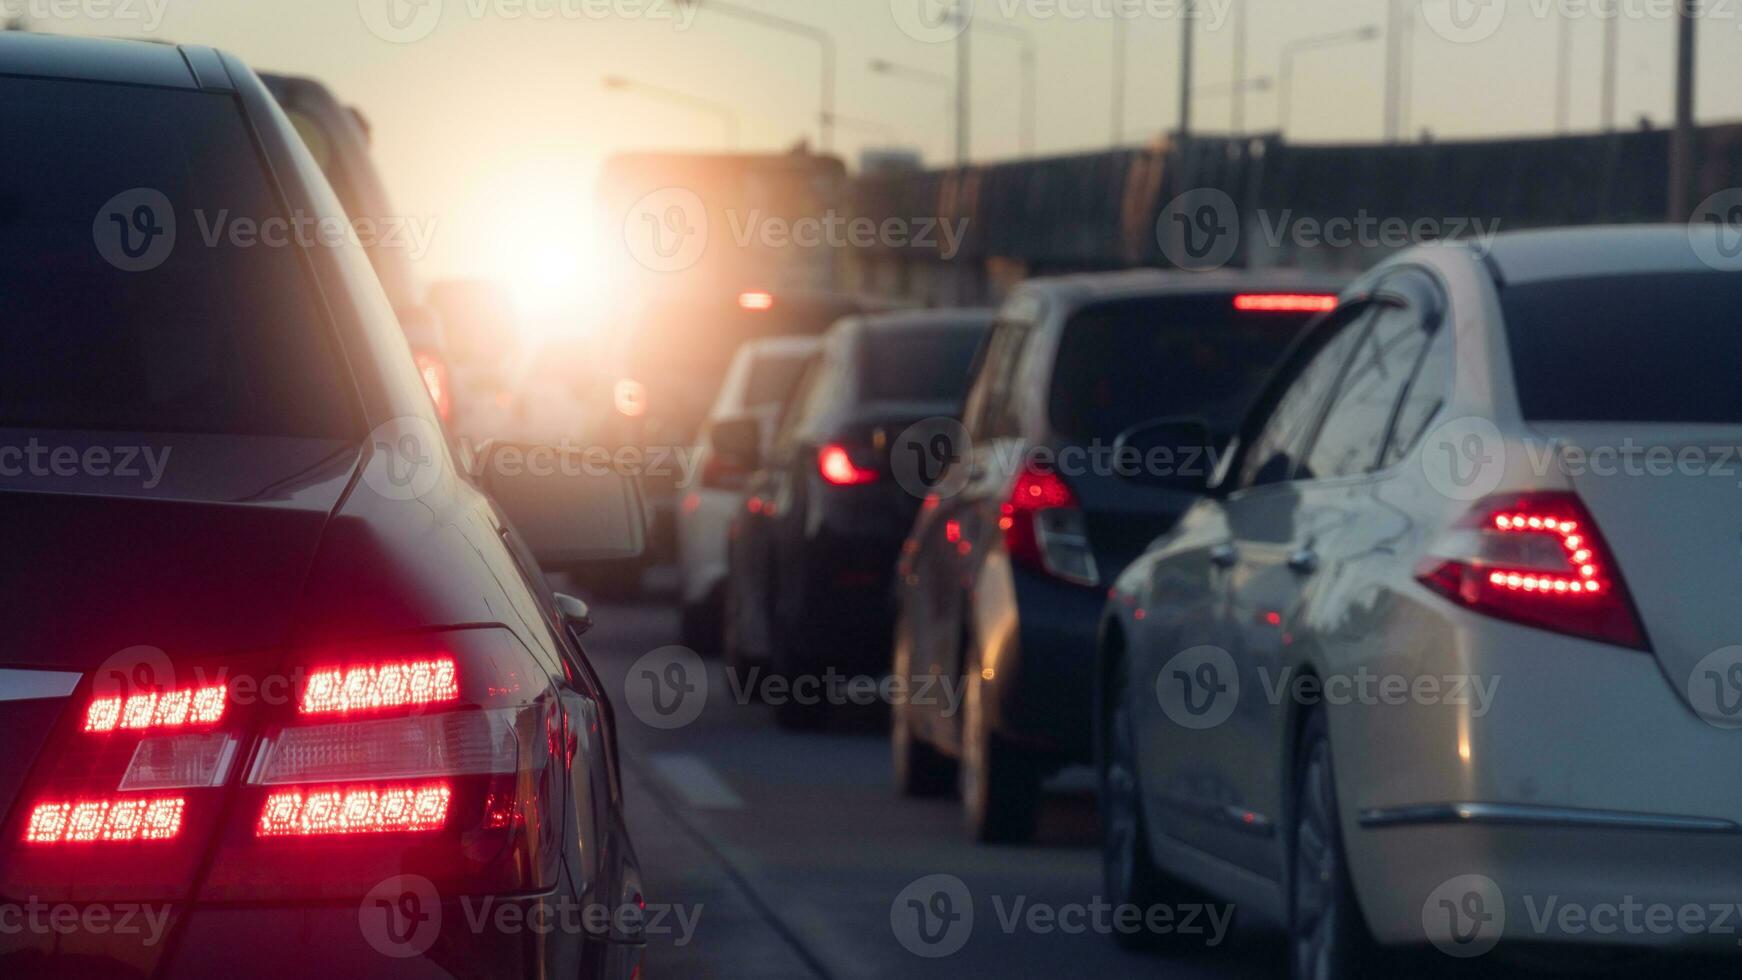 bak- sida av lyx bil med sväng på broms ljus på asfalt vägar. under rusa timmar för resa eller företag arbete. miljö av trafik sylt med många bilar morgon- eller kväll tid. foto